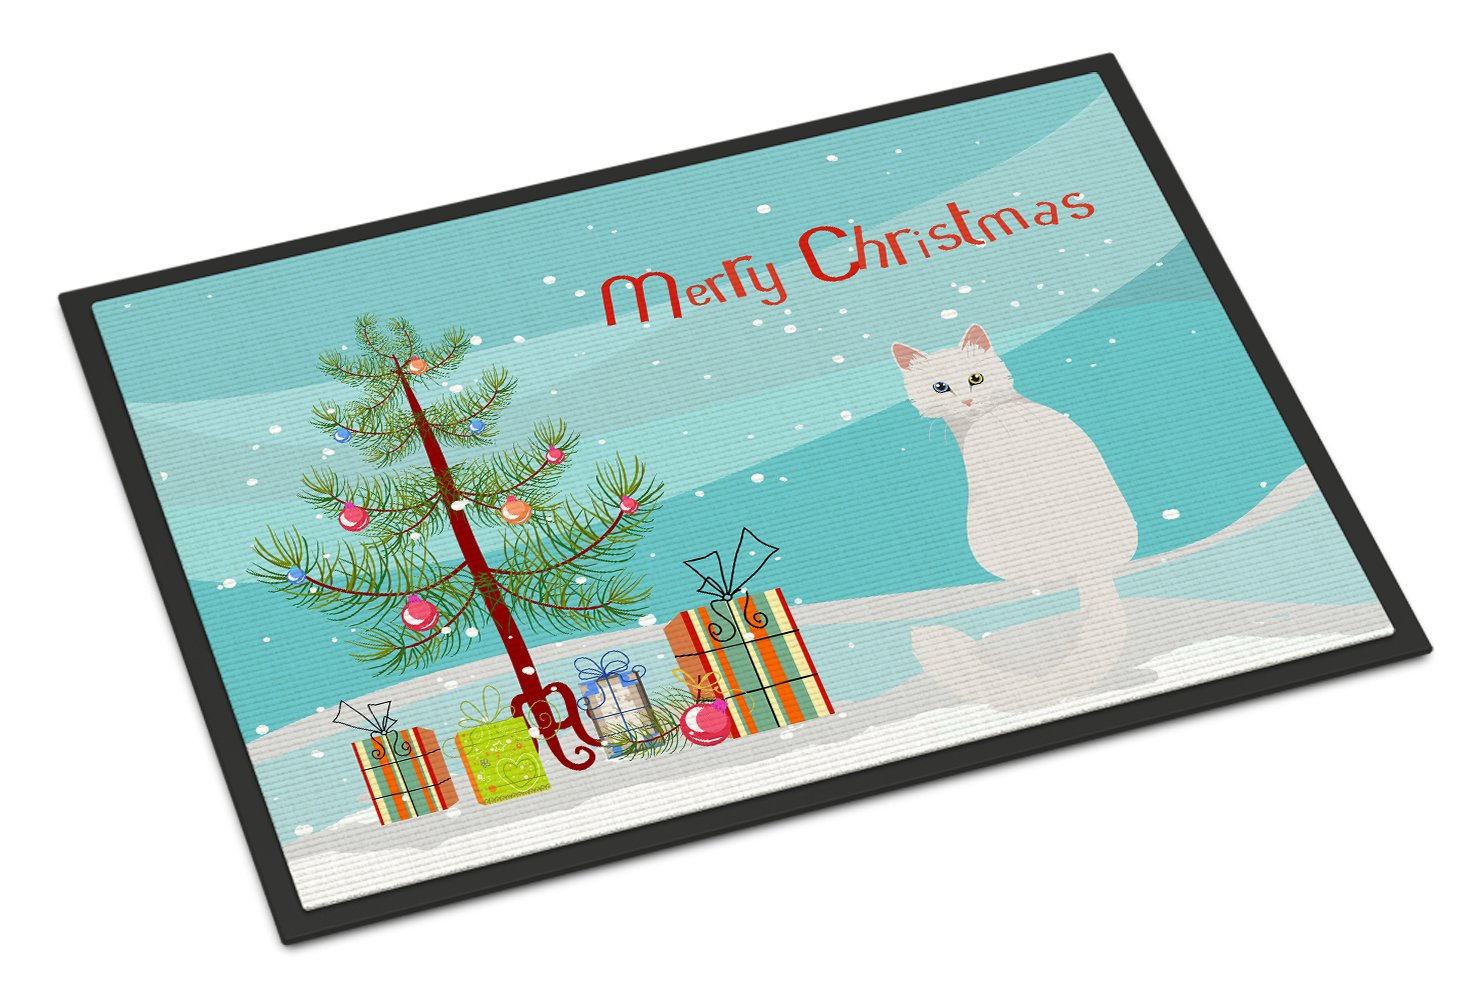 Turkish Angora Cat Merry Christmas Indoor or Outdoor Mat 24x36 CK4807JMAT by Caroline's Treasures